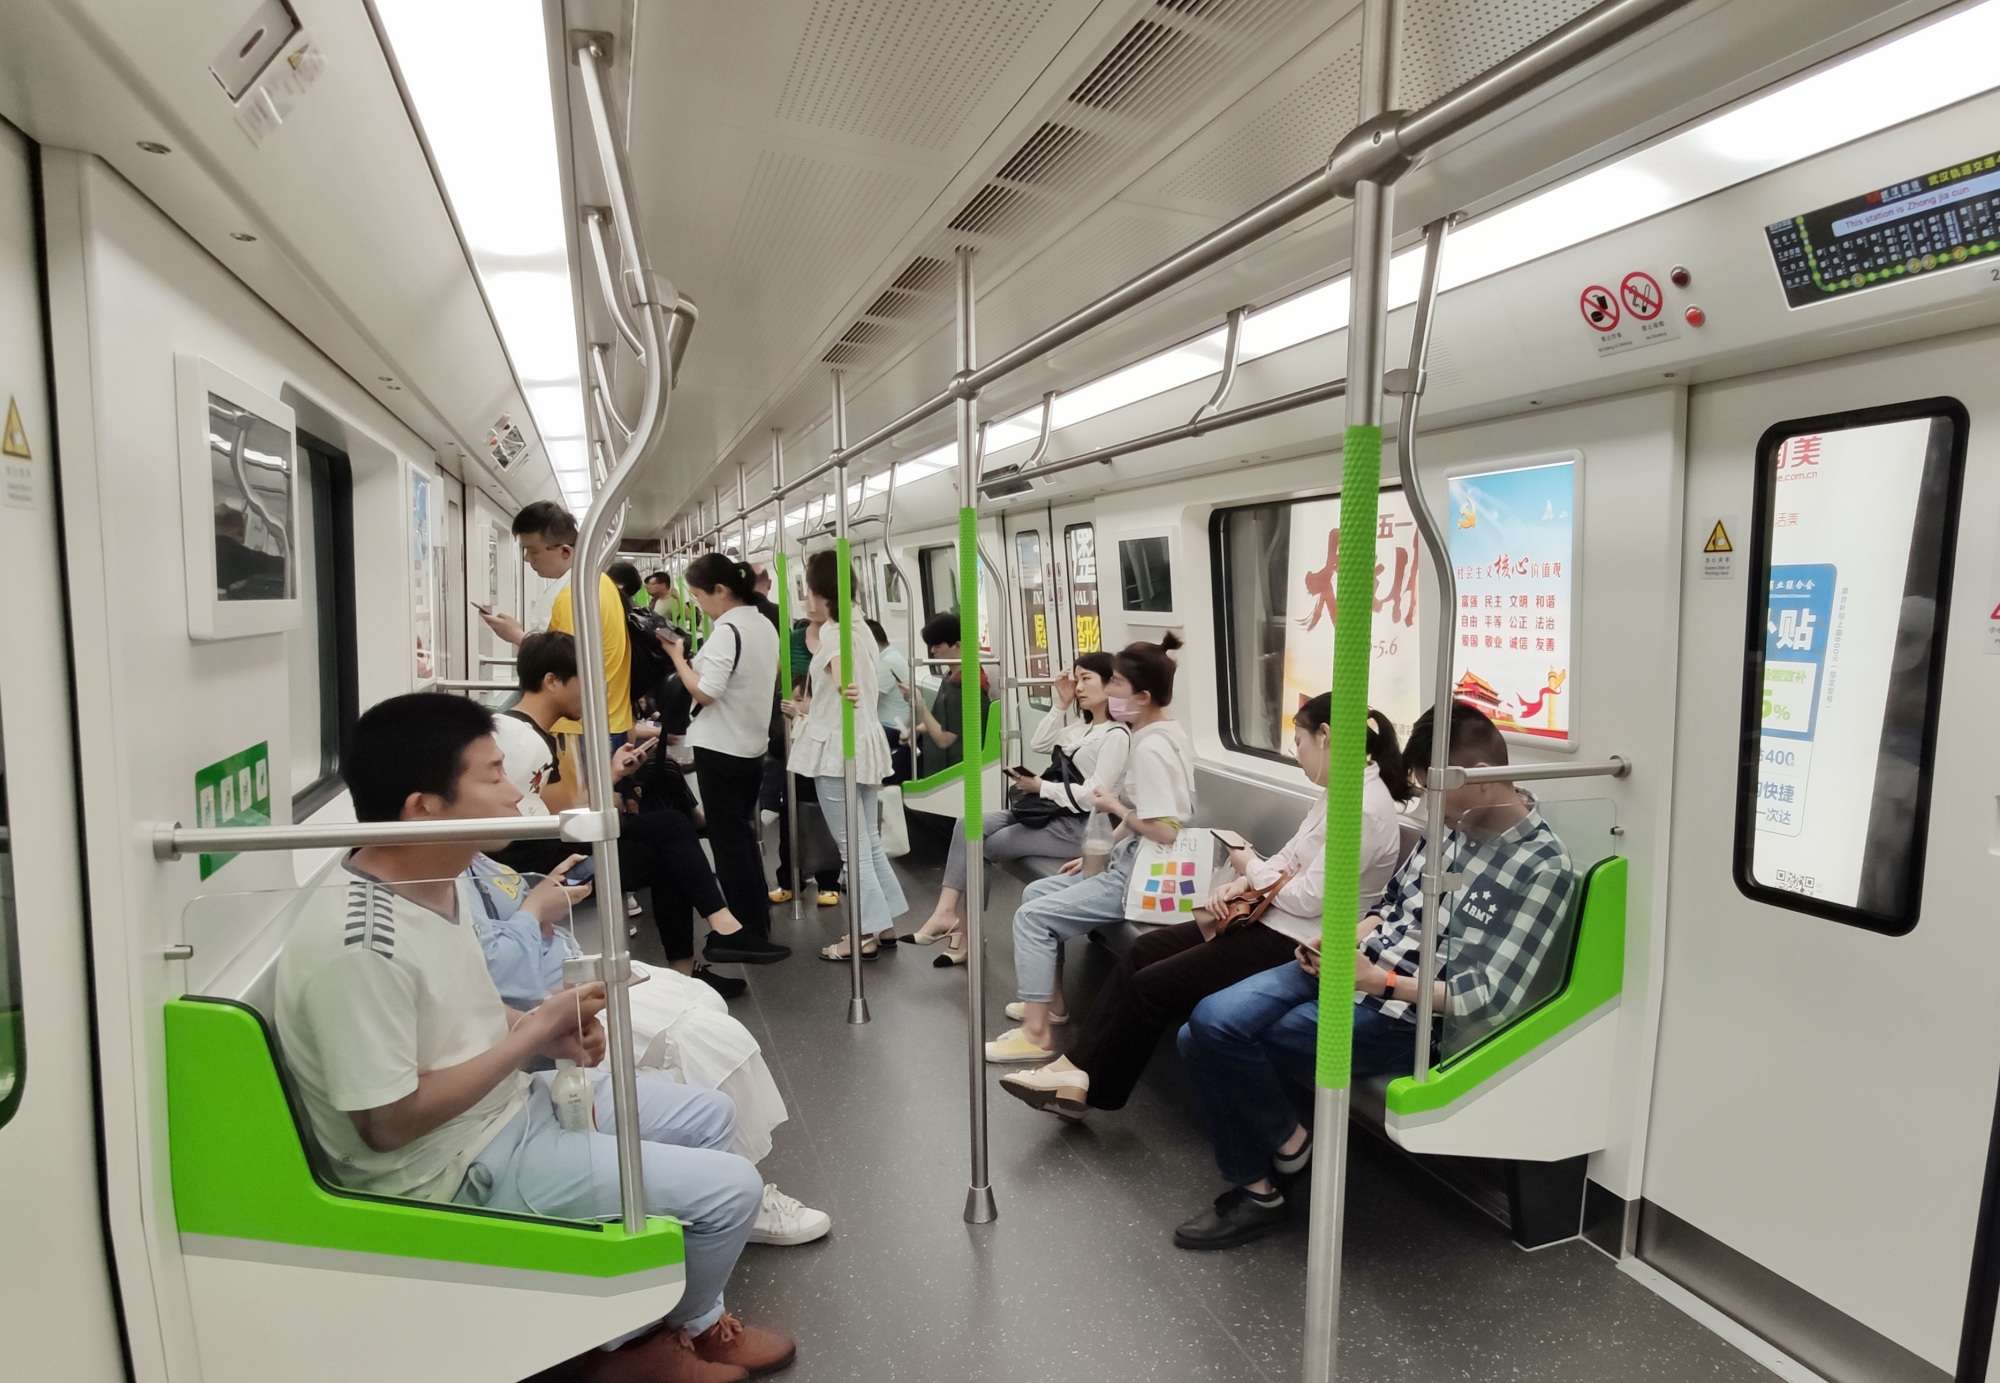 武汉轨道交通4号线的蔡甸段通过了专家评审,计划在9月28日开通